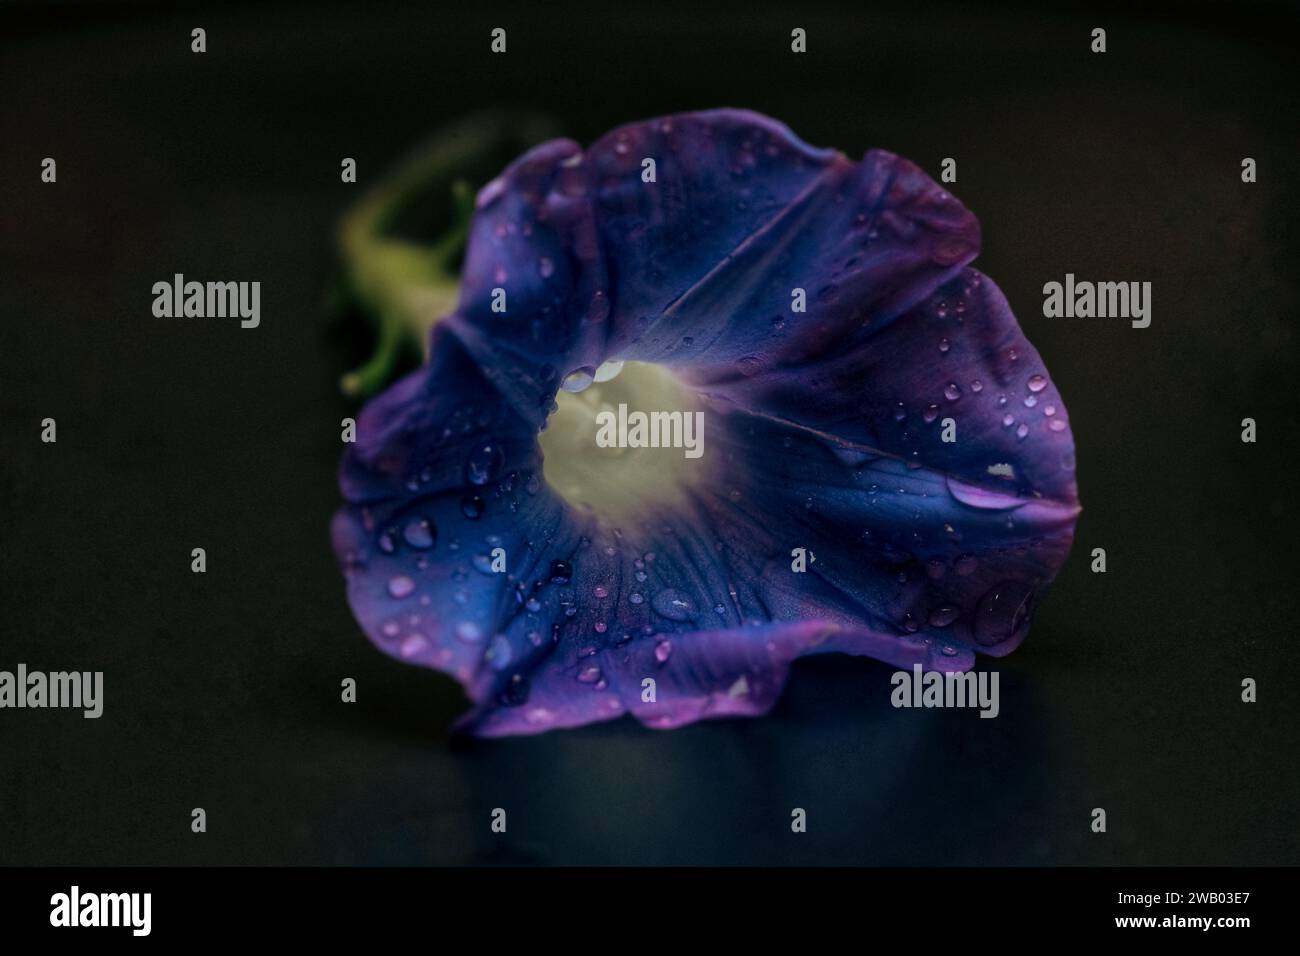 Questa immagine presenta un vivace fiore viola, evidenziato da alcune goccioline di watenr scintillanti Foto Stock